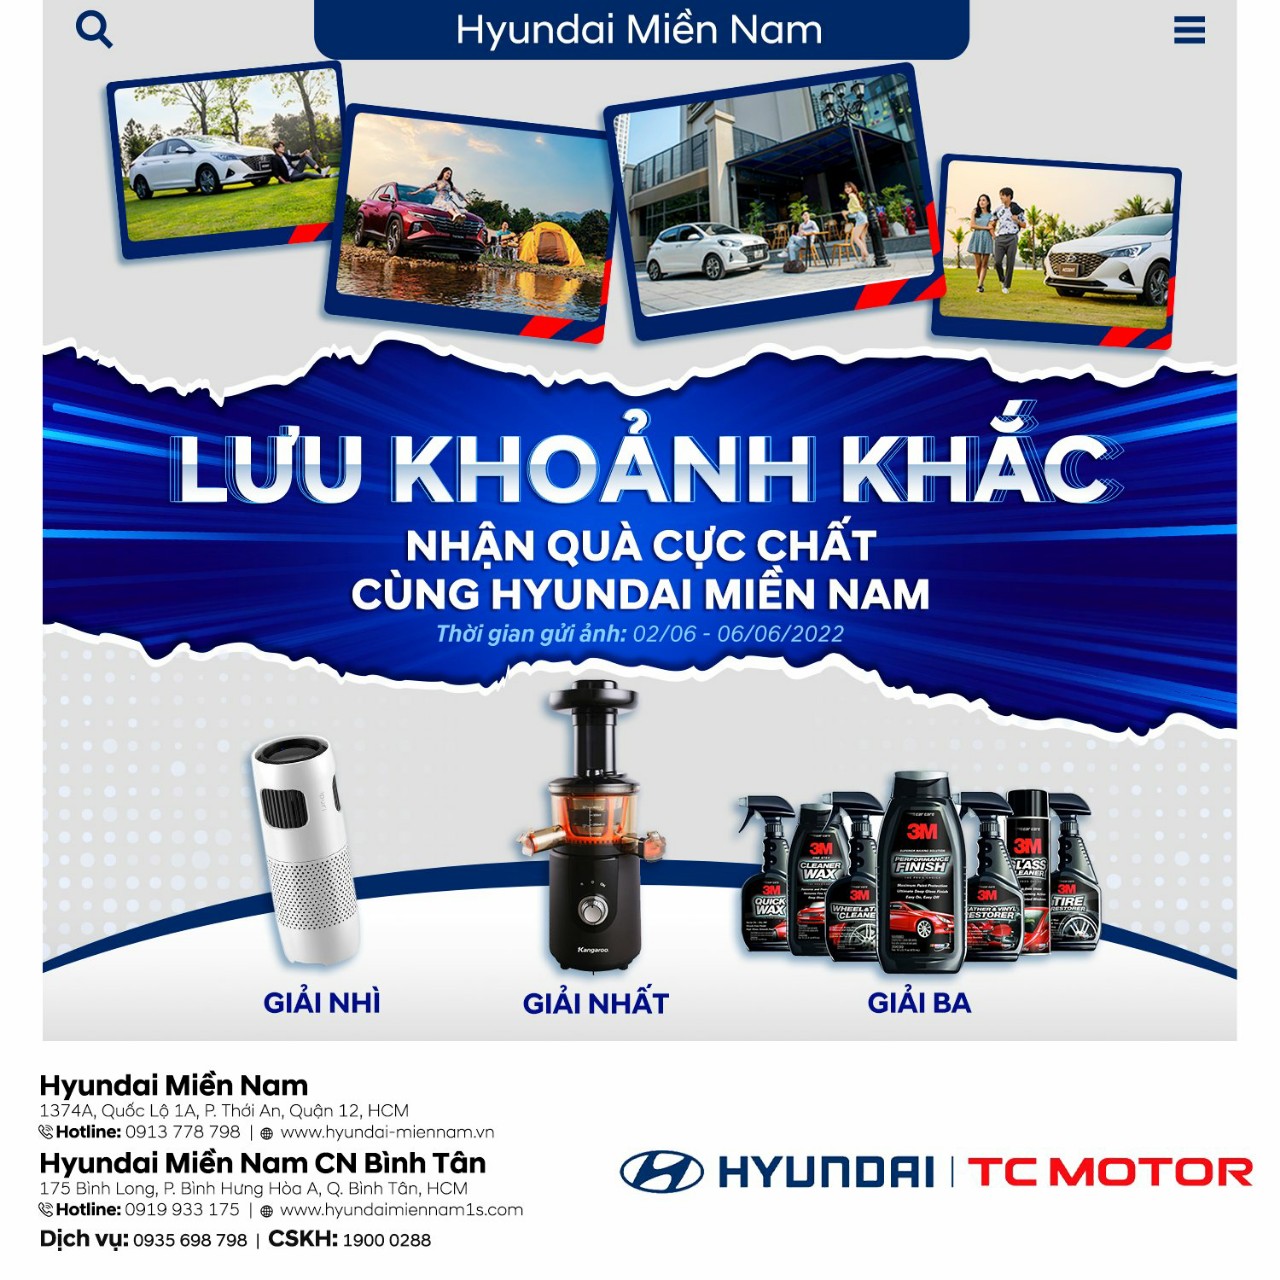 Cuộc thi "lưu giữ khoảnh khắc - nhận quà cực chất" Hyundai Miền Nam 